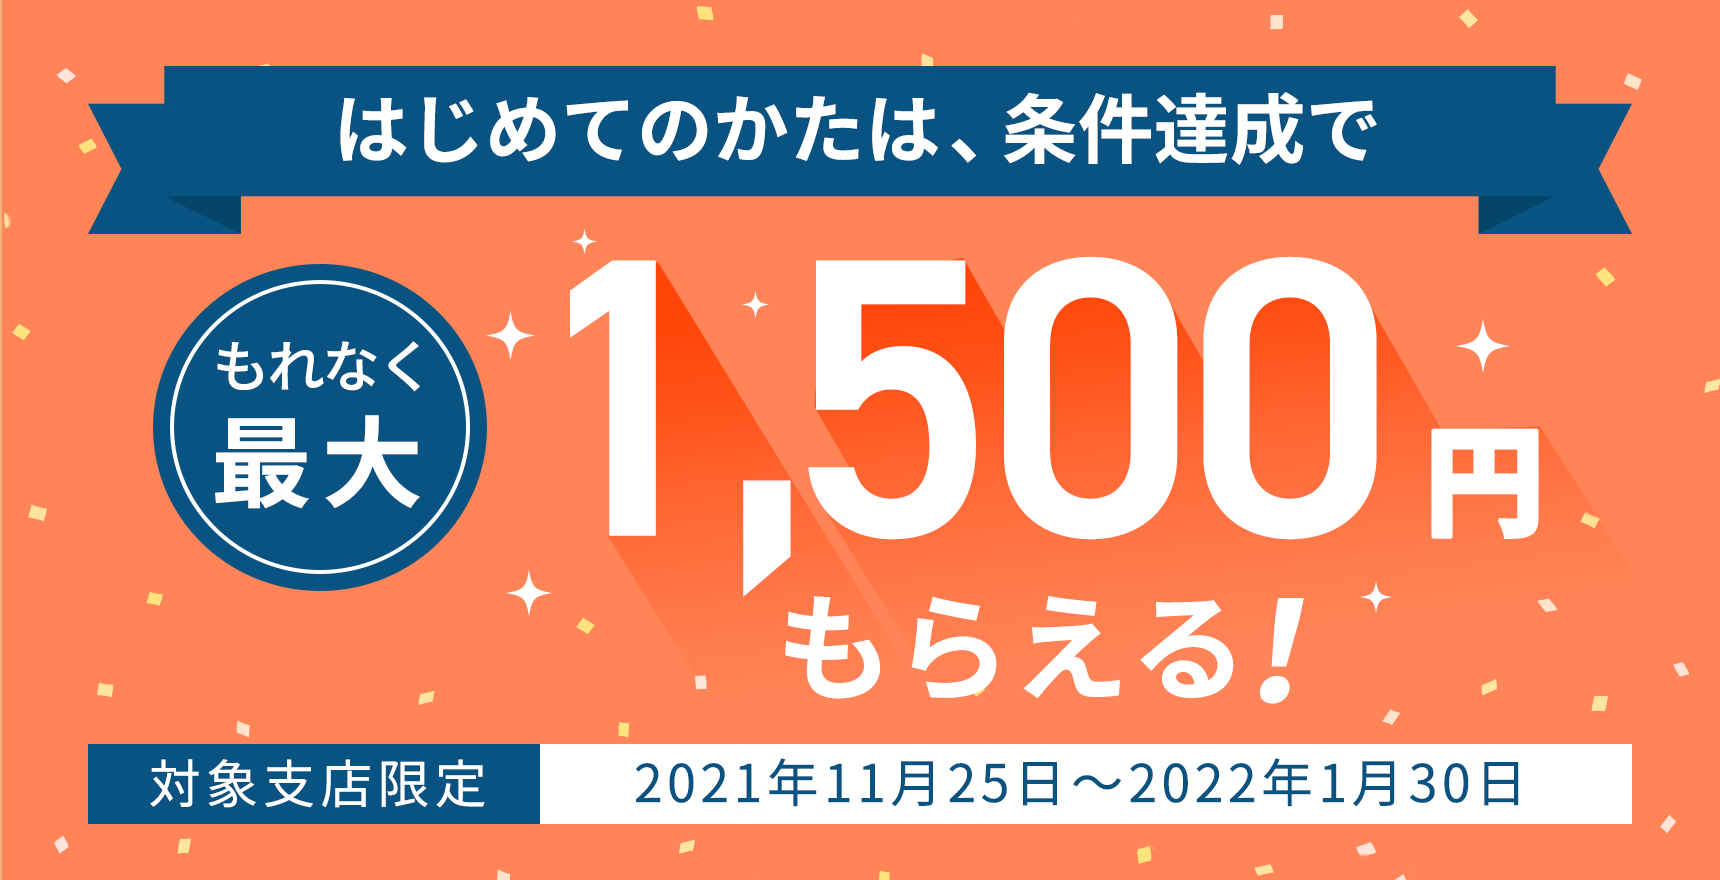 住信SBIネット銀行の提携NEOBANKに新規口座開設＆1万円入金で1500円貰える。11/25～2022/1/30。